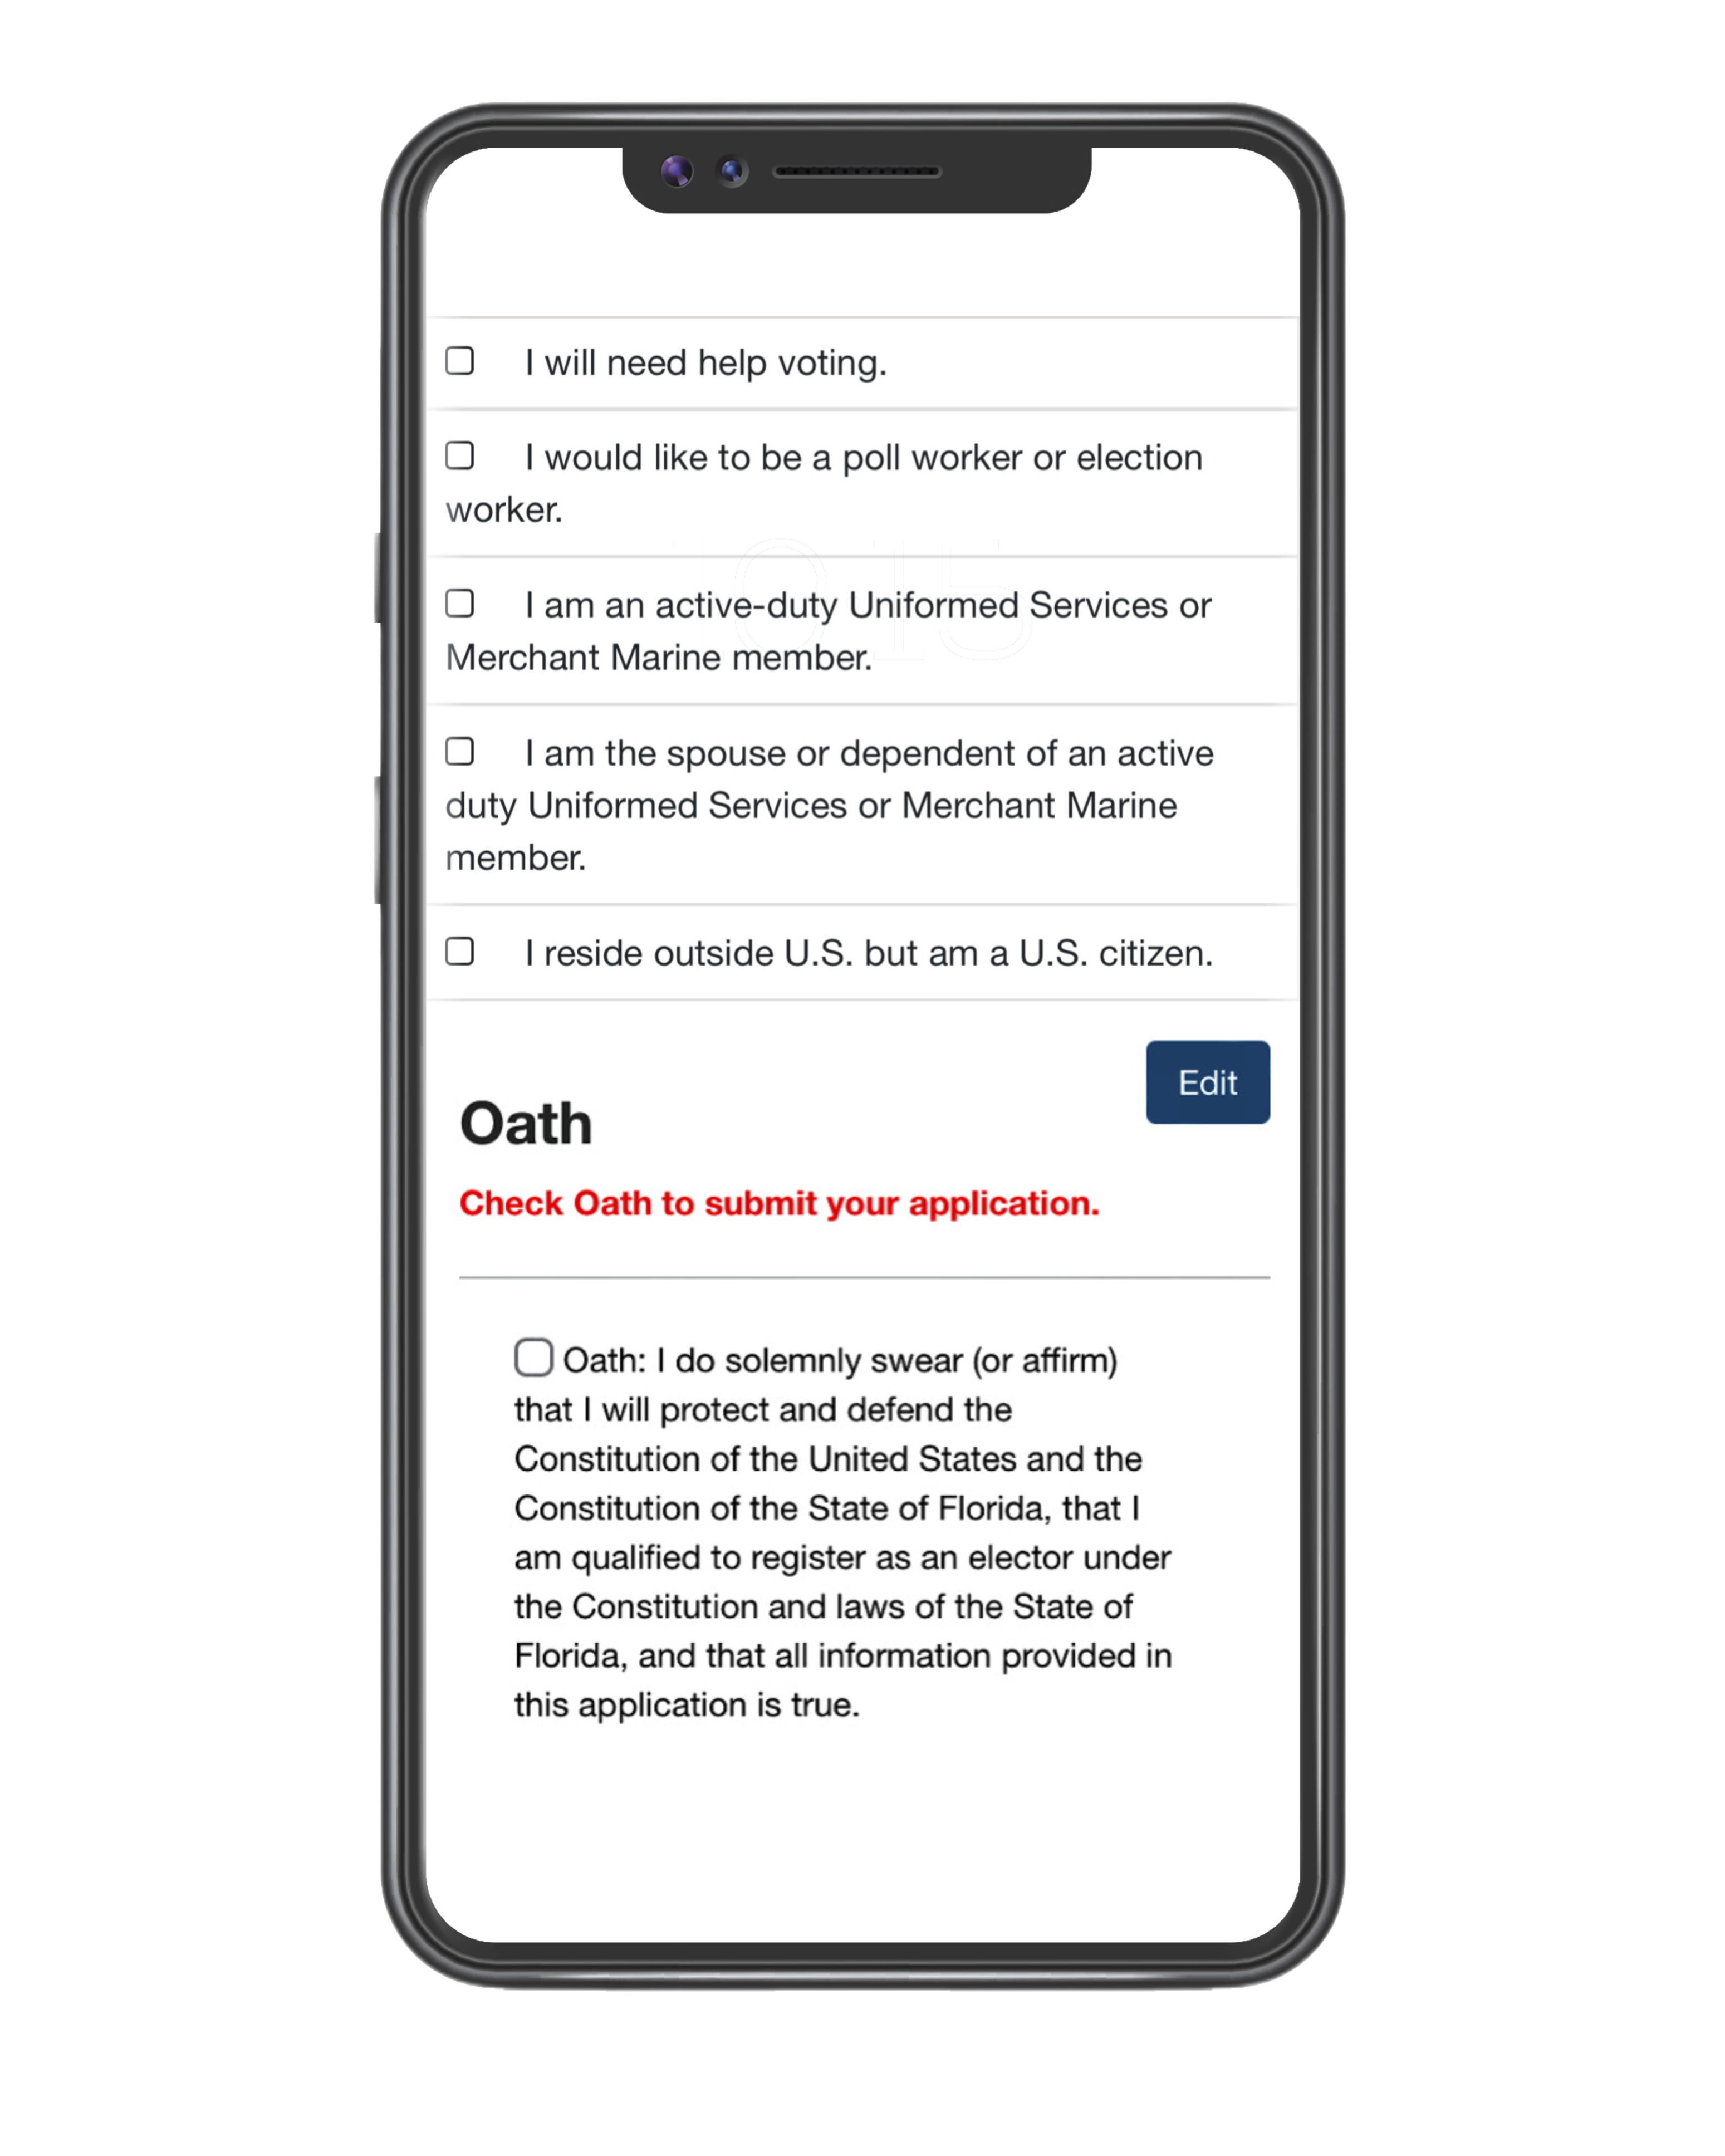 Review Info / Oath